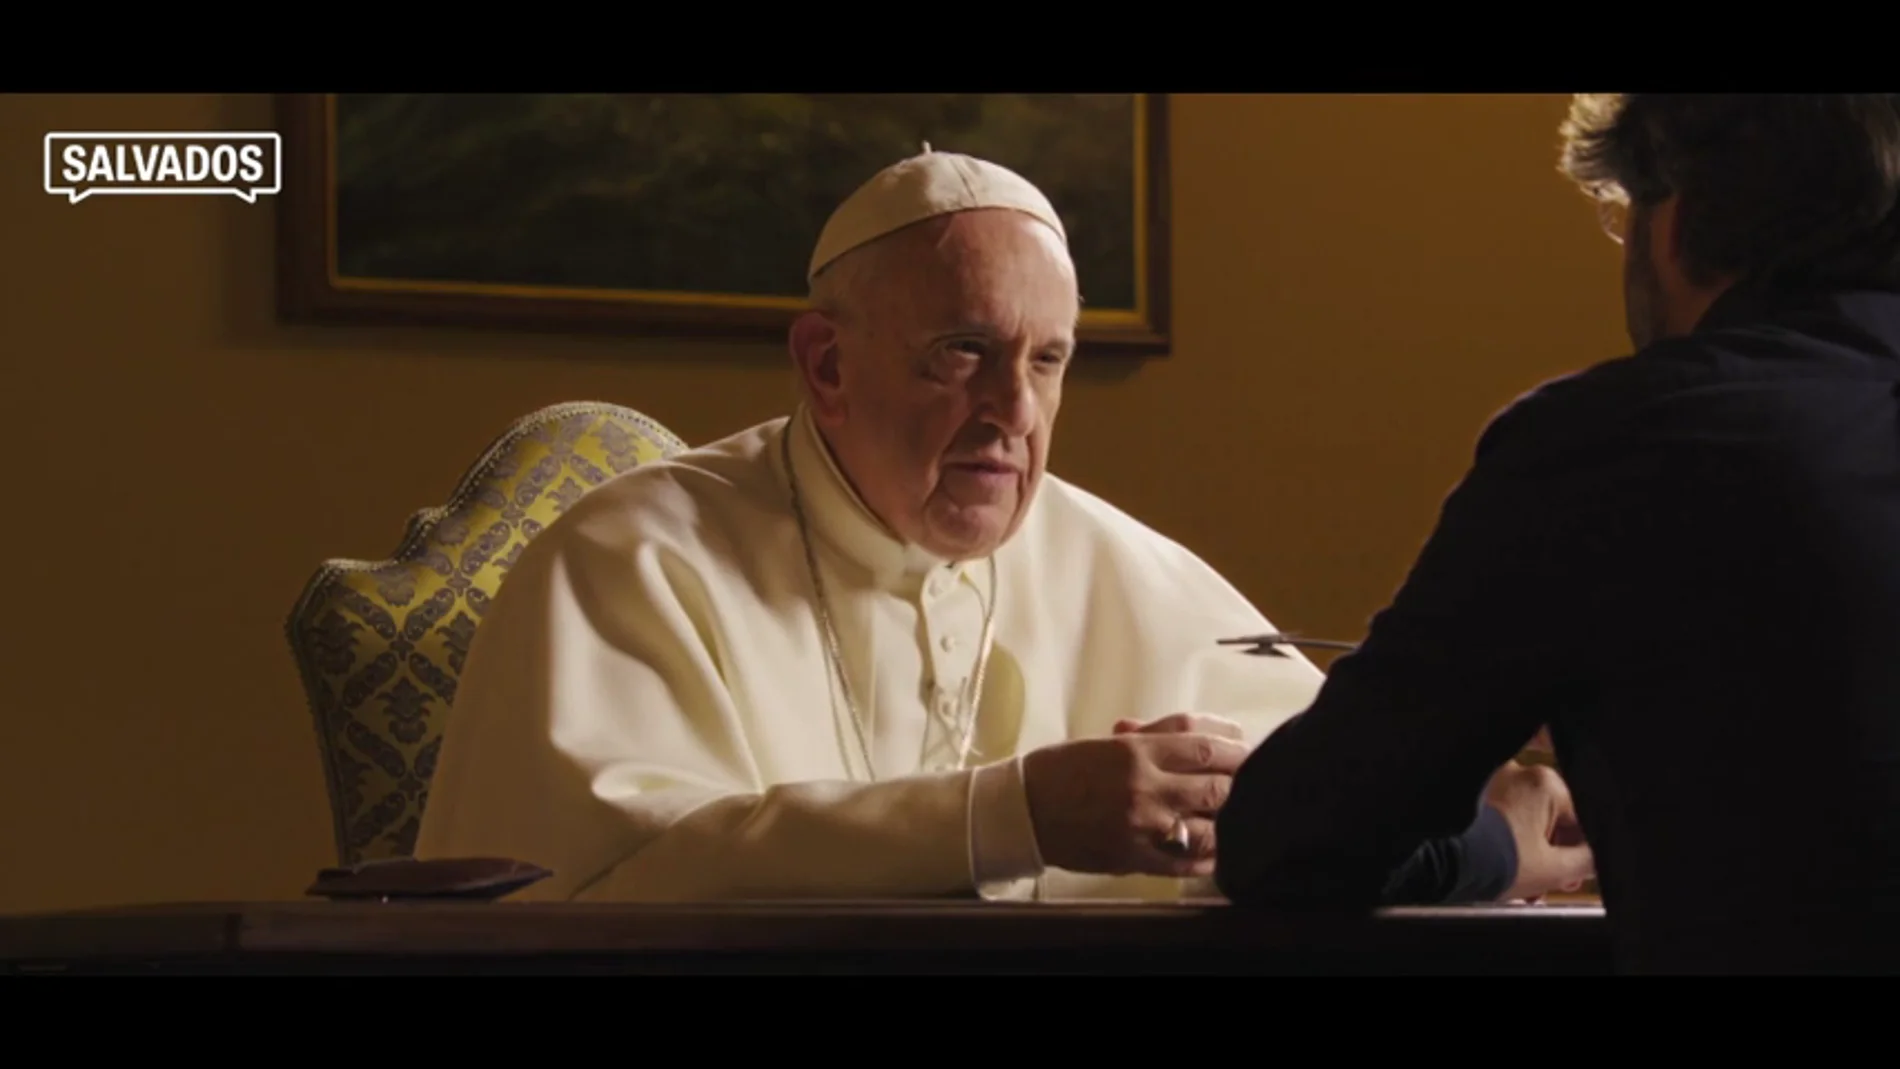 El papa Francisco responde en Salvados: seis minutos que resumen la primera entrevista de Jordi Évole en El Vaticano